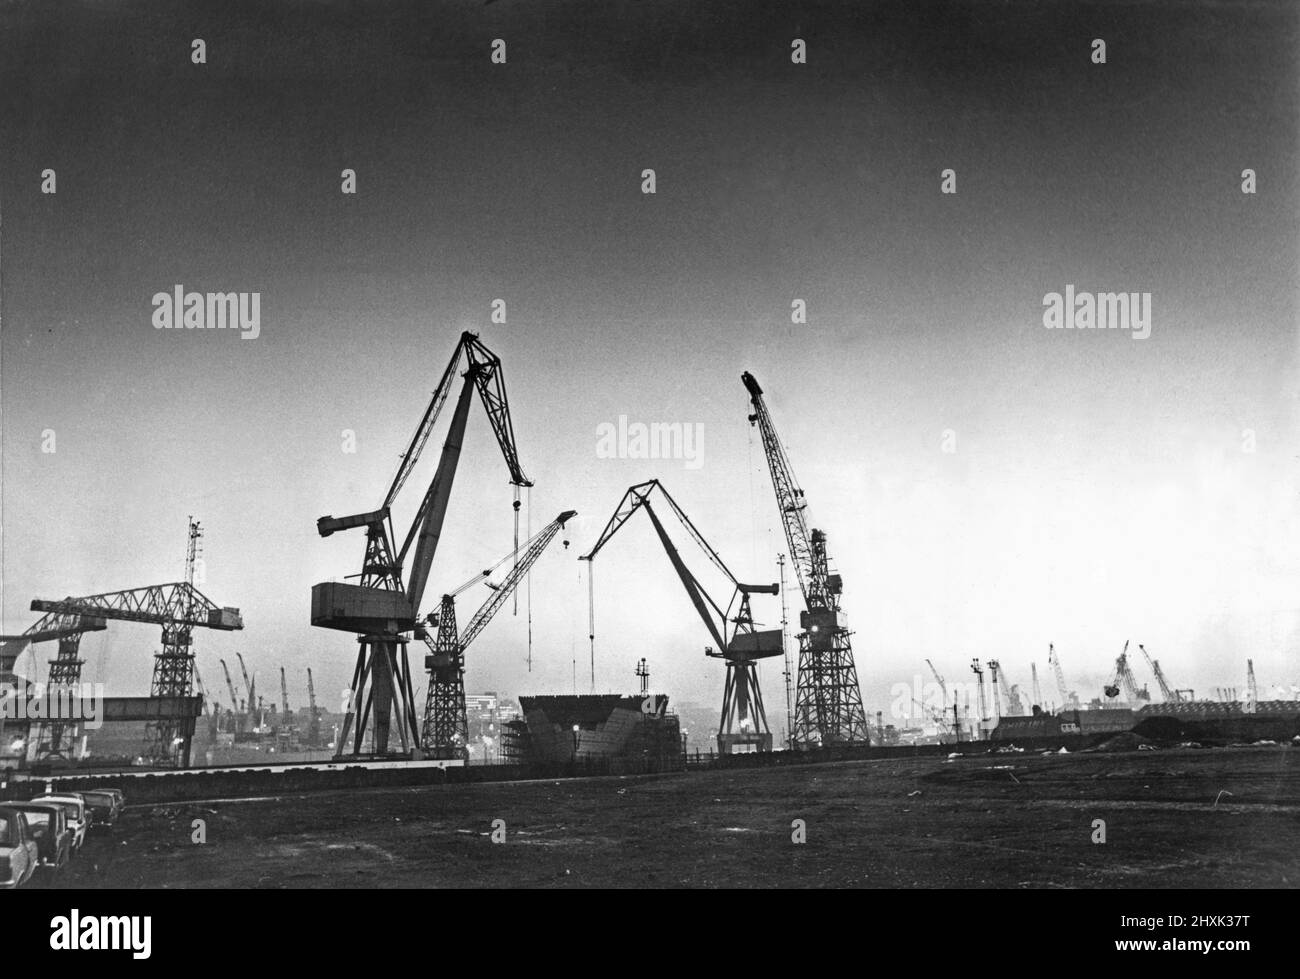 La portaerei della Royal Navy HMS Illustrious visto qui in costruzione al cantiere Swan Hunter Shipbuilders sul Tyne a Wallsend. 13th dicembre 1977 Foto Stock